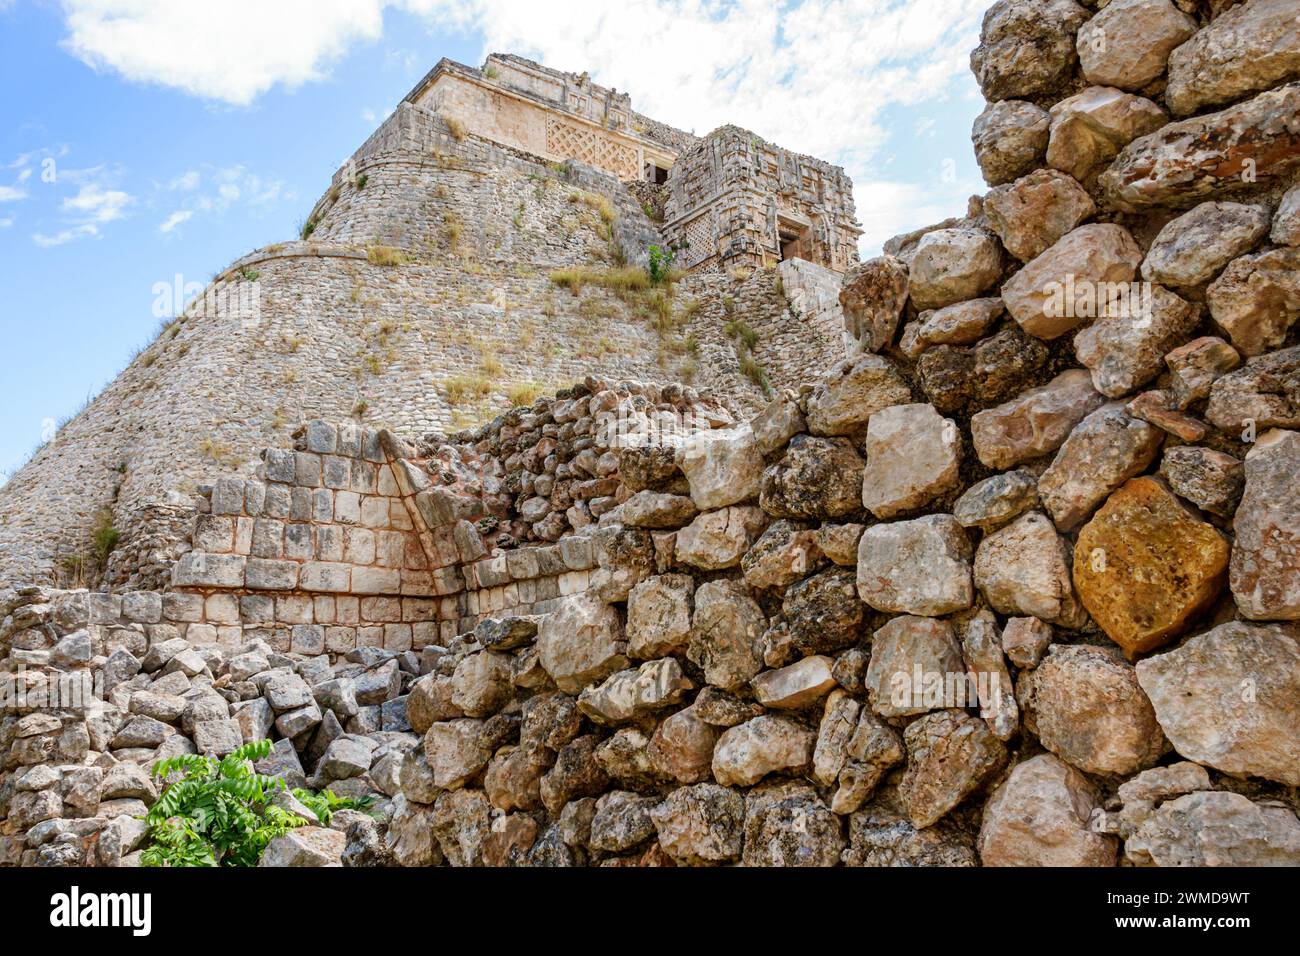 Merida Mexico, Puuc style Uxmal Archaeological zone site, Zona Arqueologica de Uxmal, ville maya classique, Pyramide de la pyramide Mésoaméricaine magicienne à pas Banque D'Images